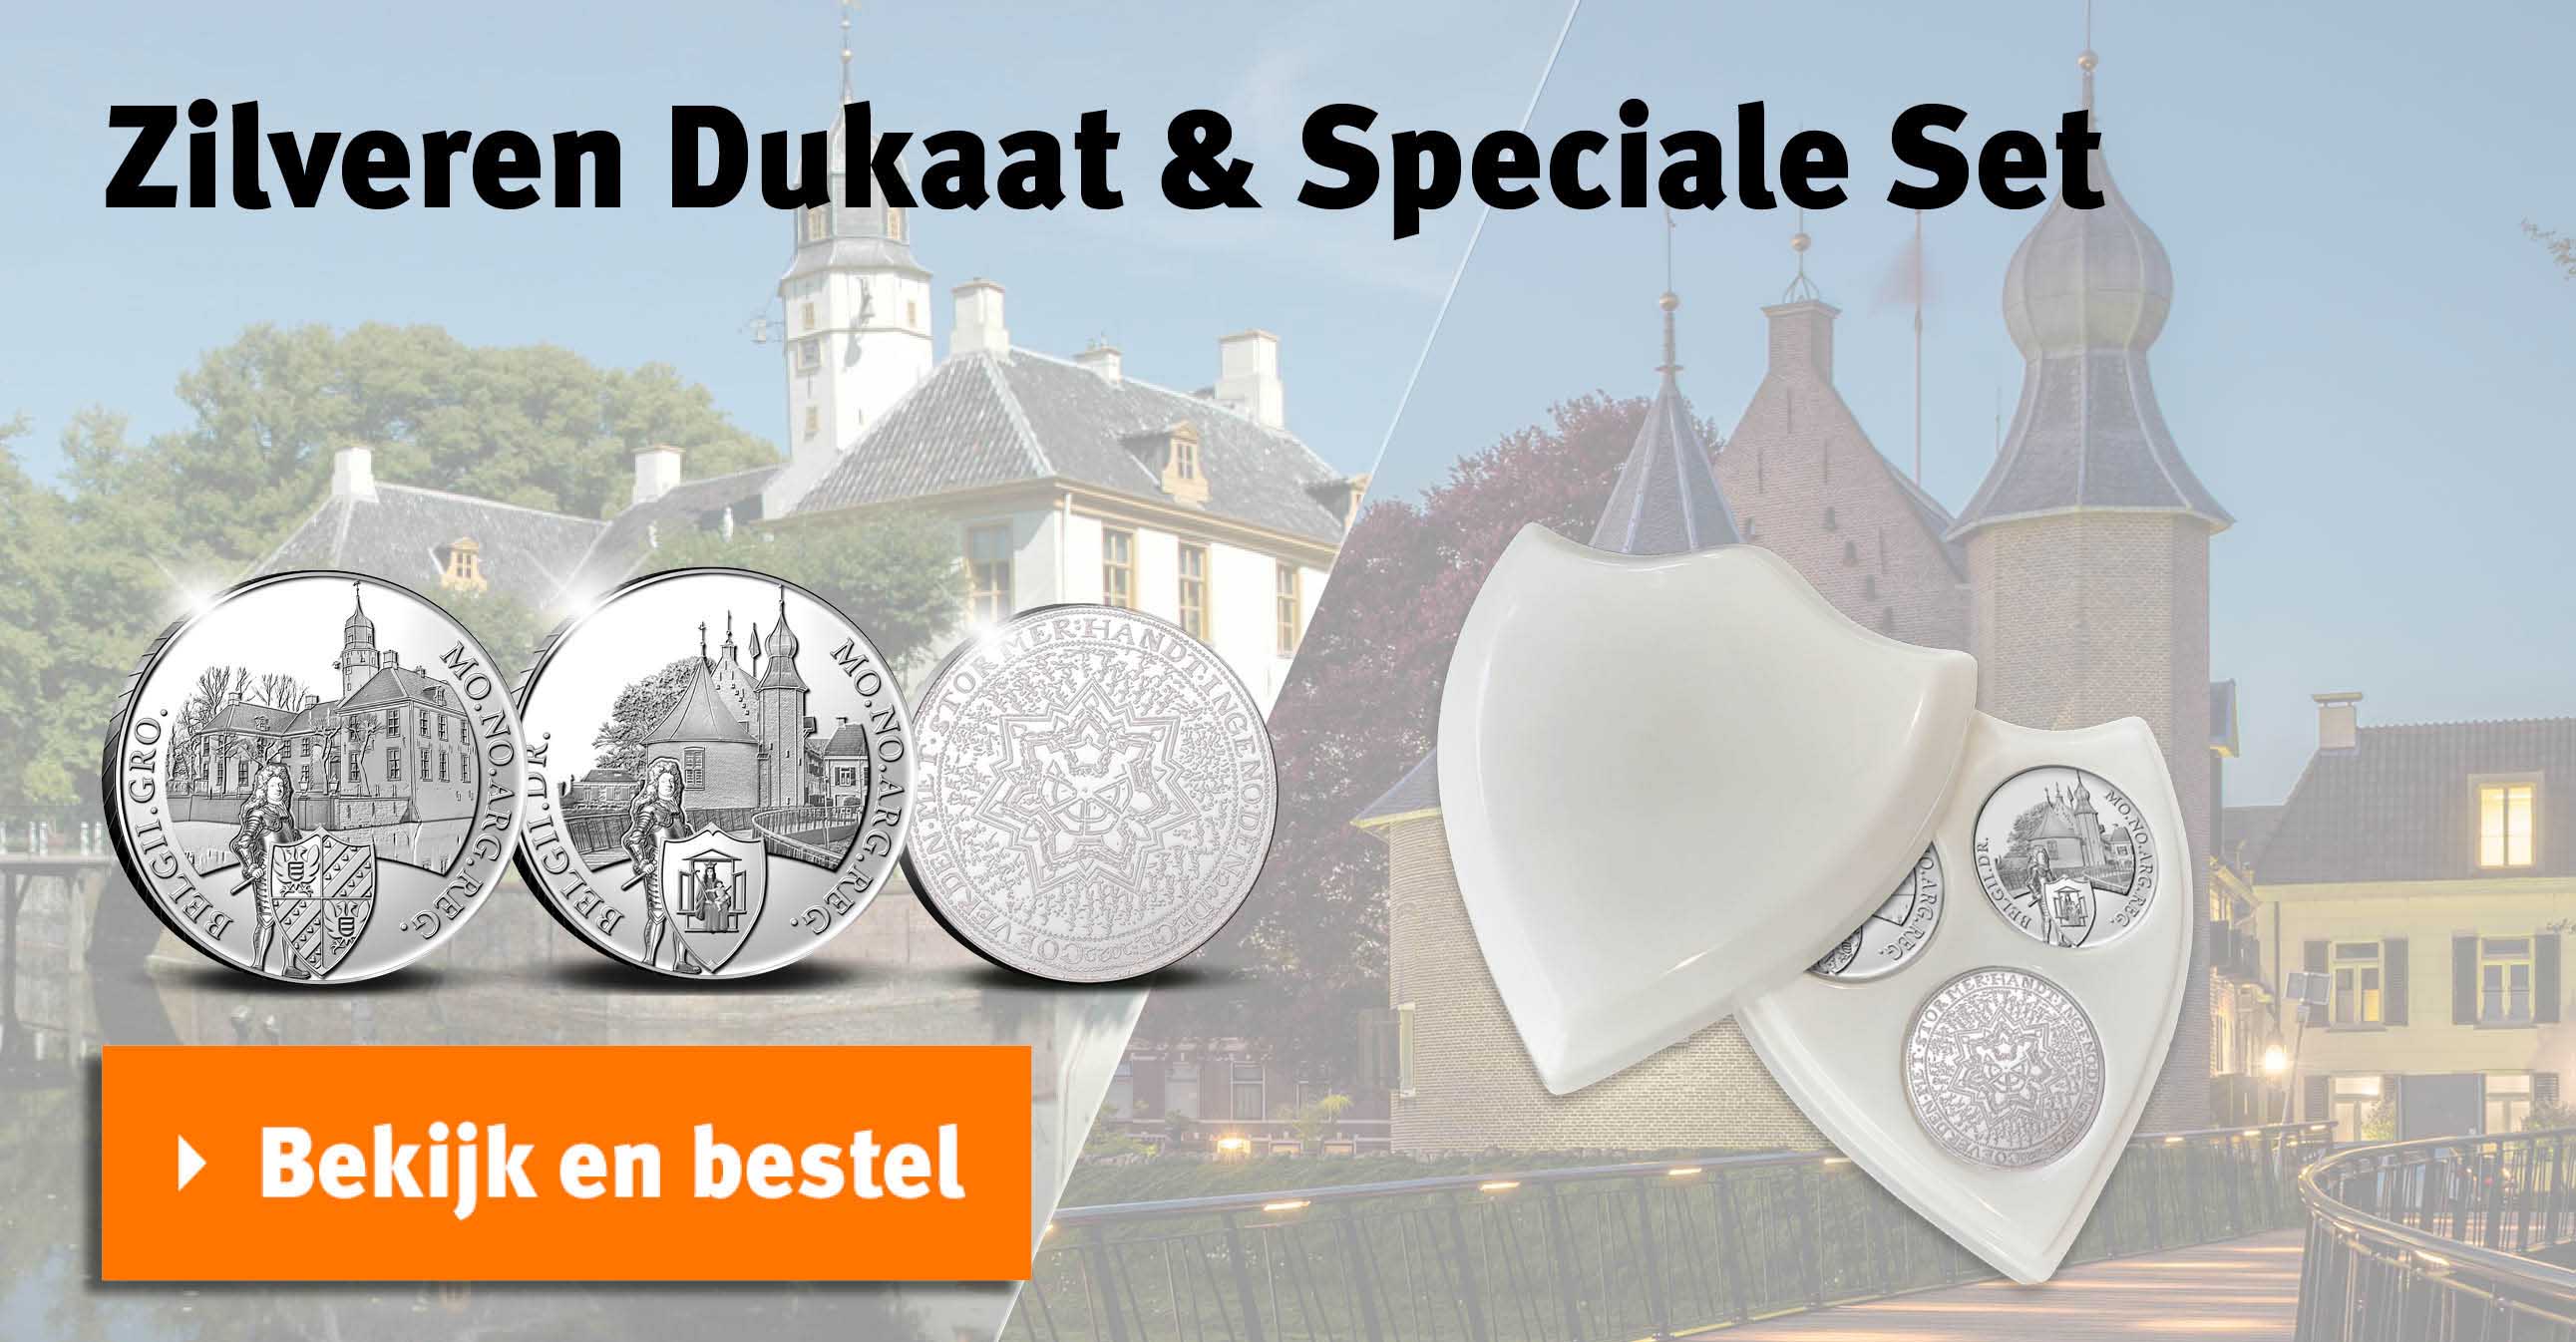 Bekijk en bestel: Zilveren Dukaat & Speciale Set